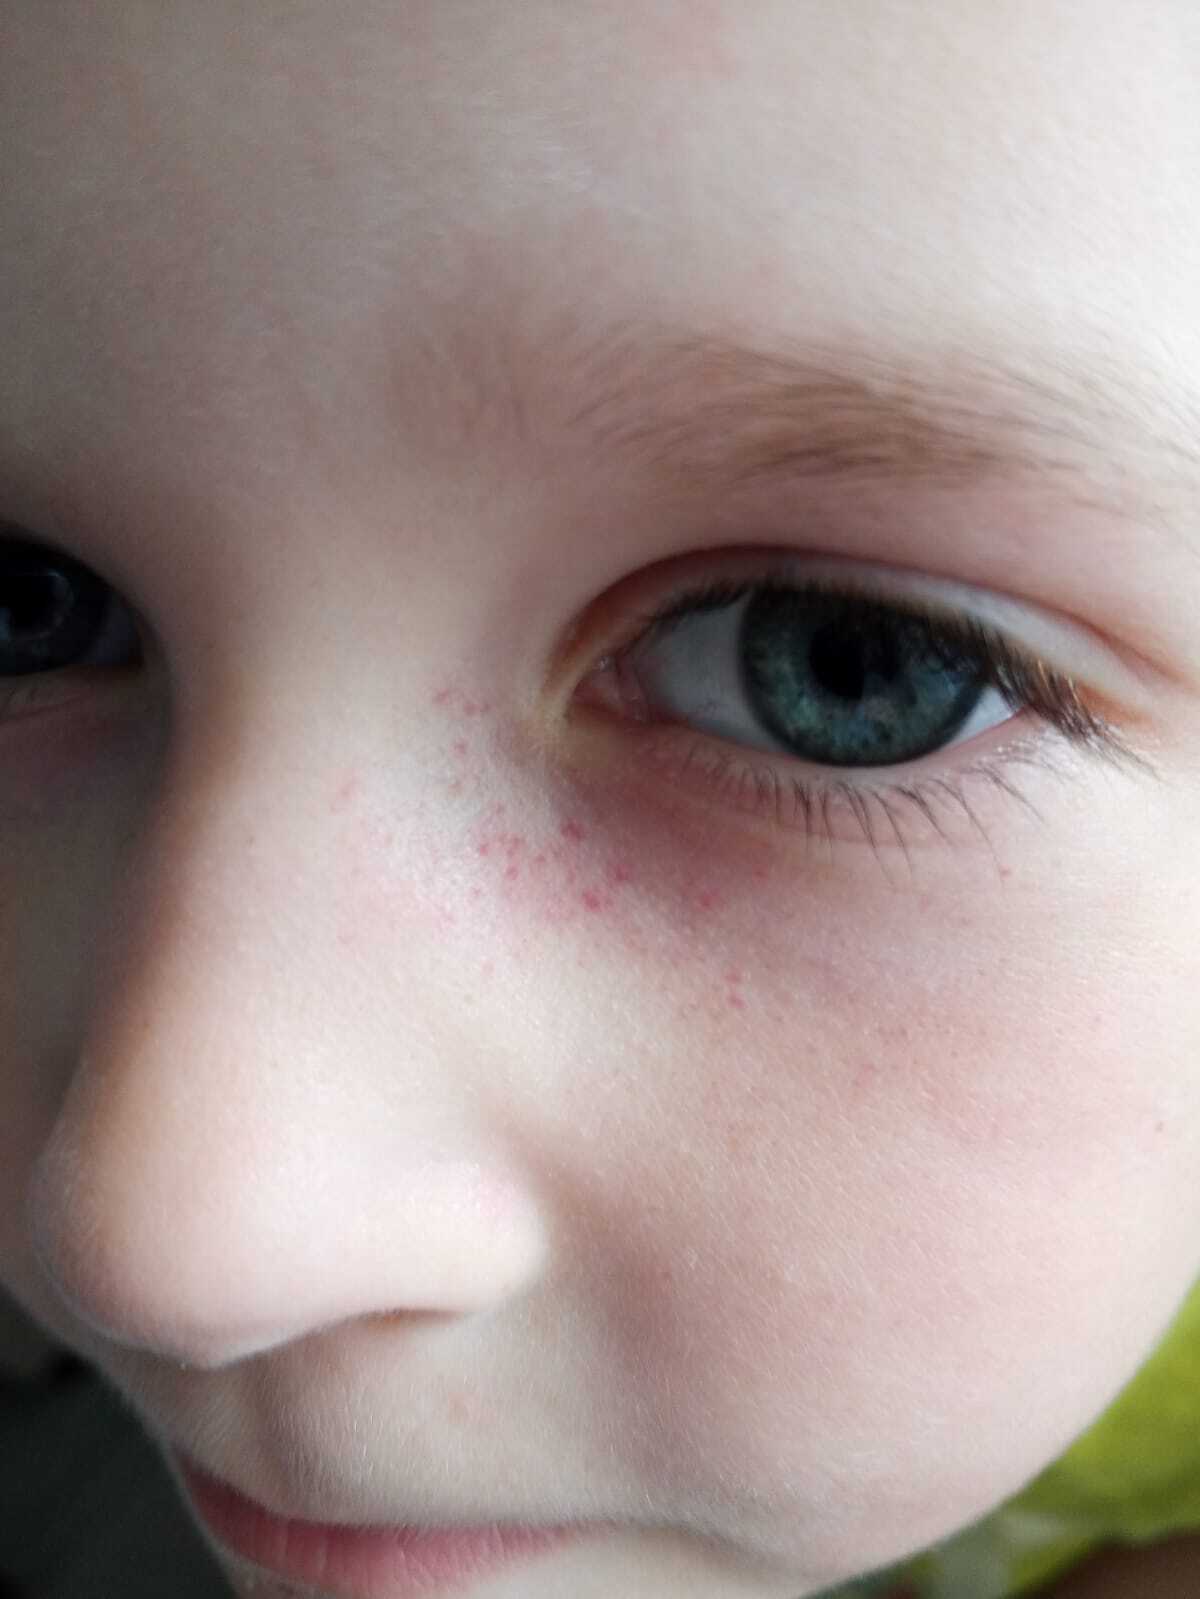 Причины возникновения красных кругов, точек или пятен под глазами у ребенка